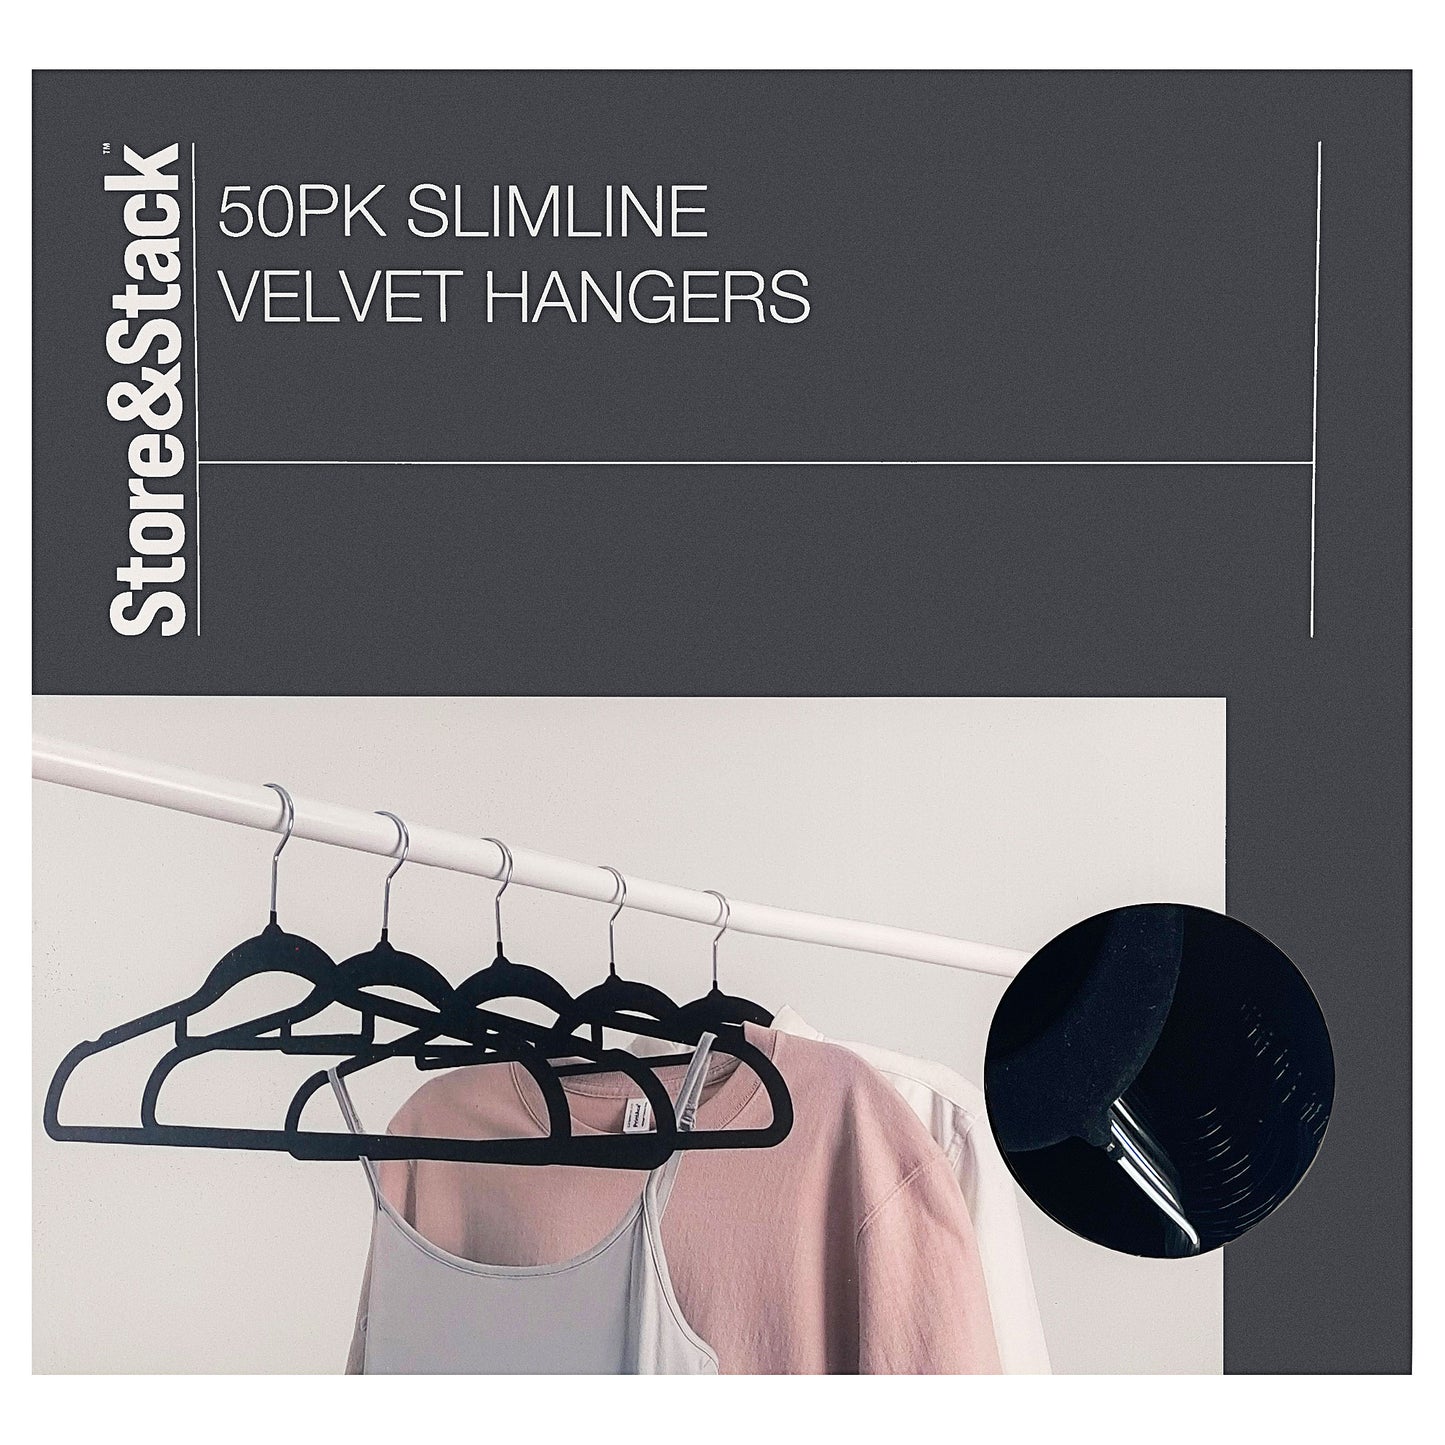 Slimline Velvet Hangers 50pk